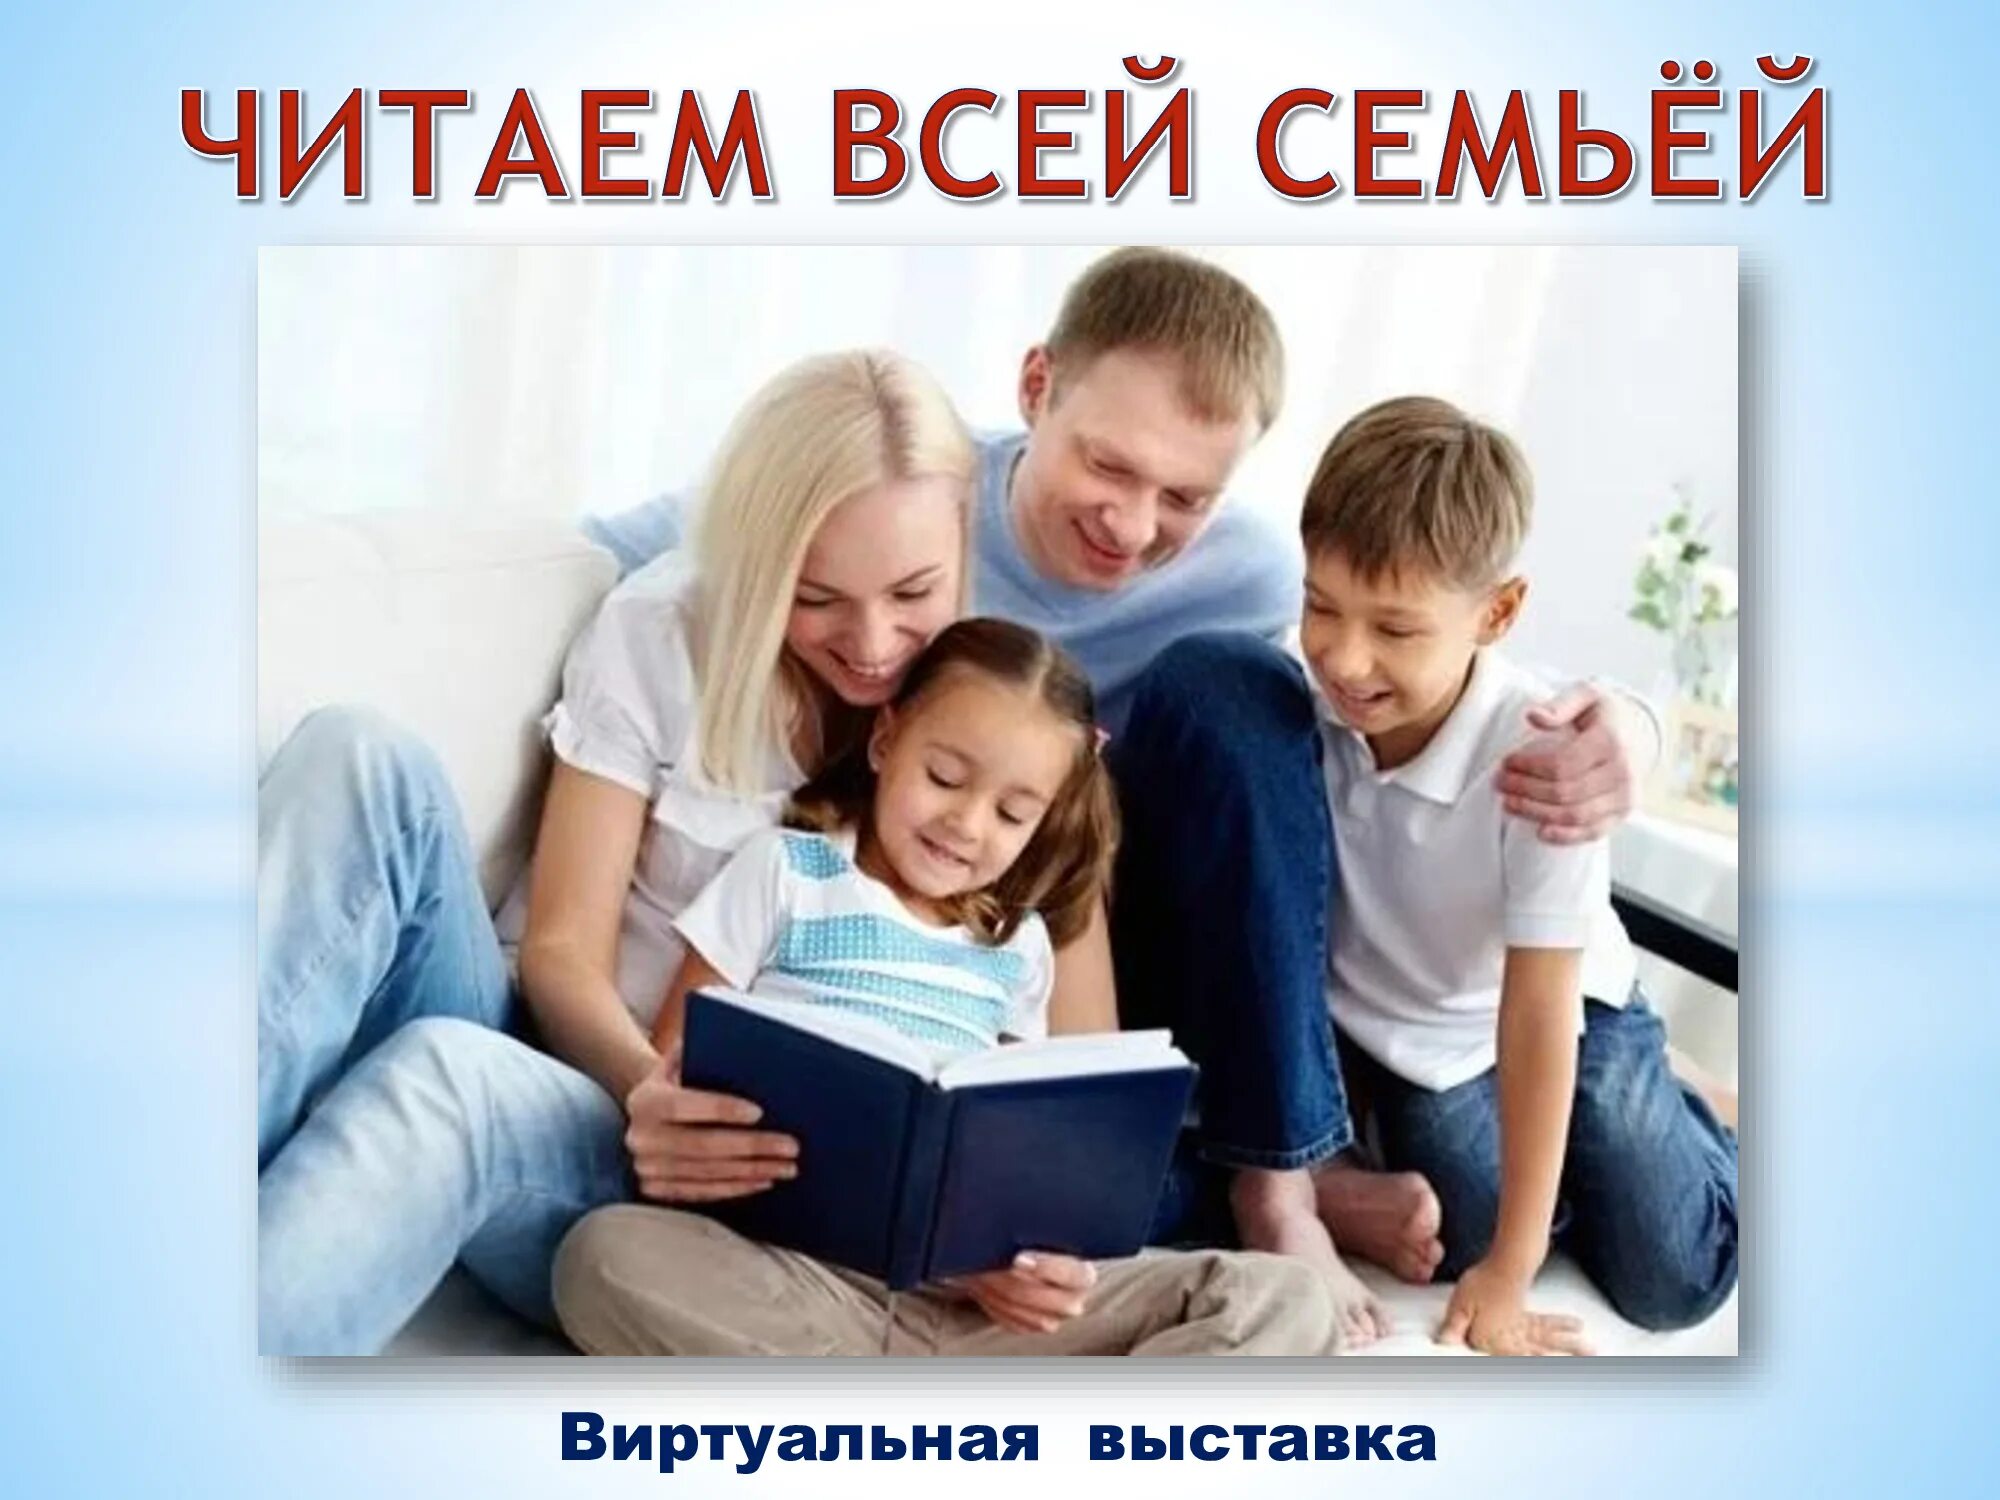 Читаем всей семьей название. Семья читает книгу. Читаем всей семьей. Чтение в семье. Чтение детей с родителями.